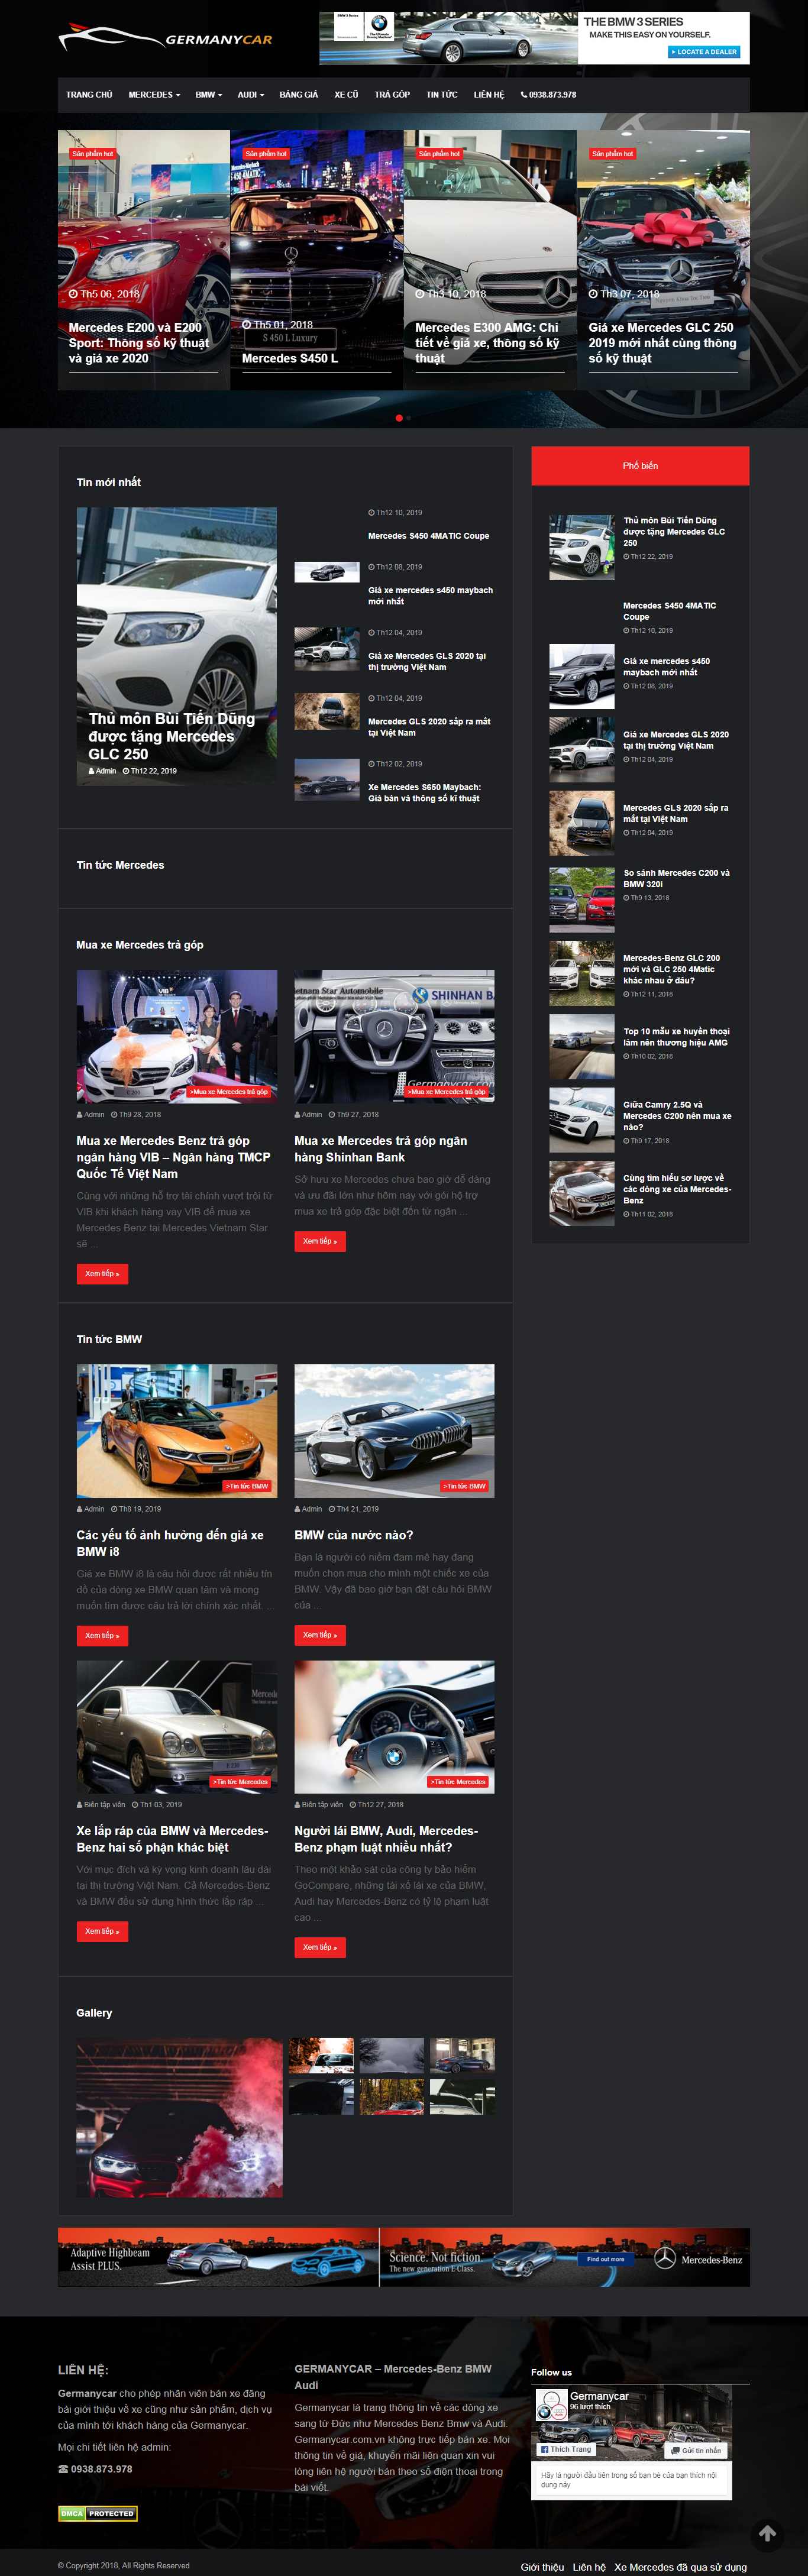 Thiết kế Website bán xe hơi - germanycar.com.vn